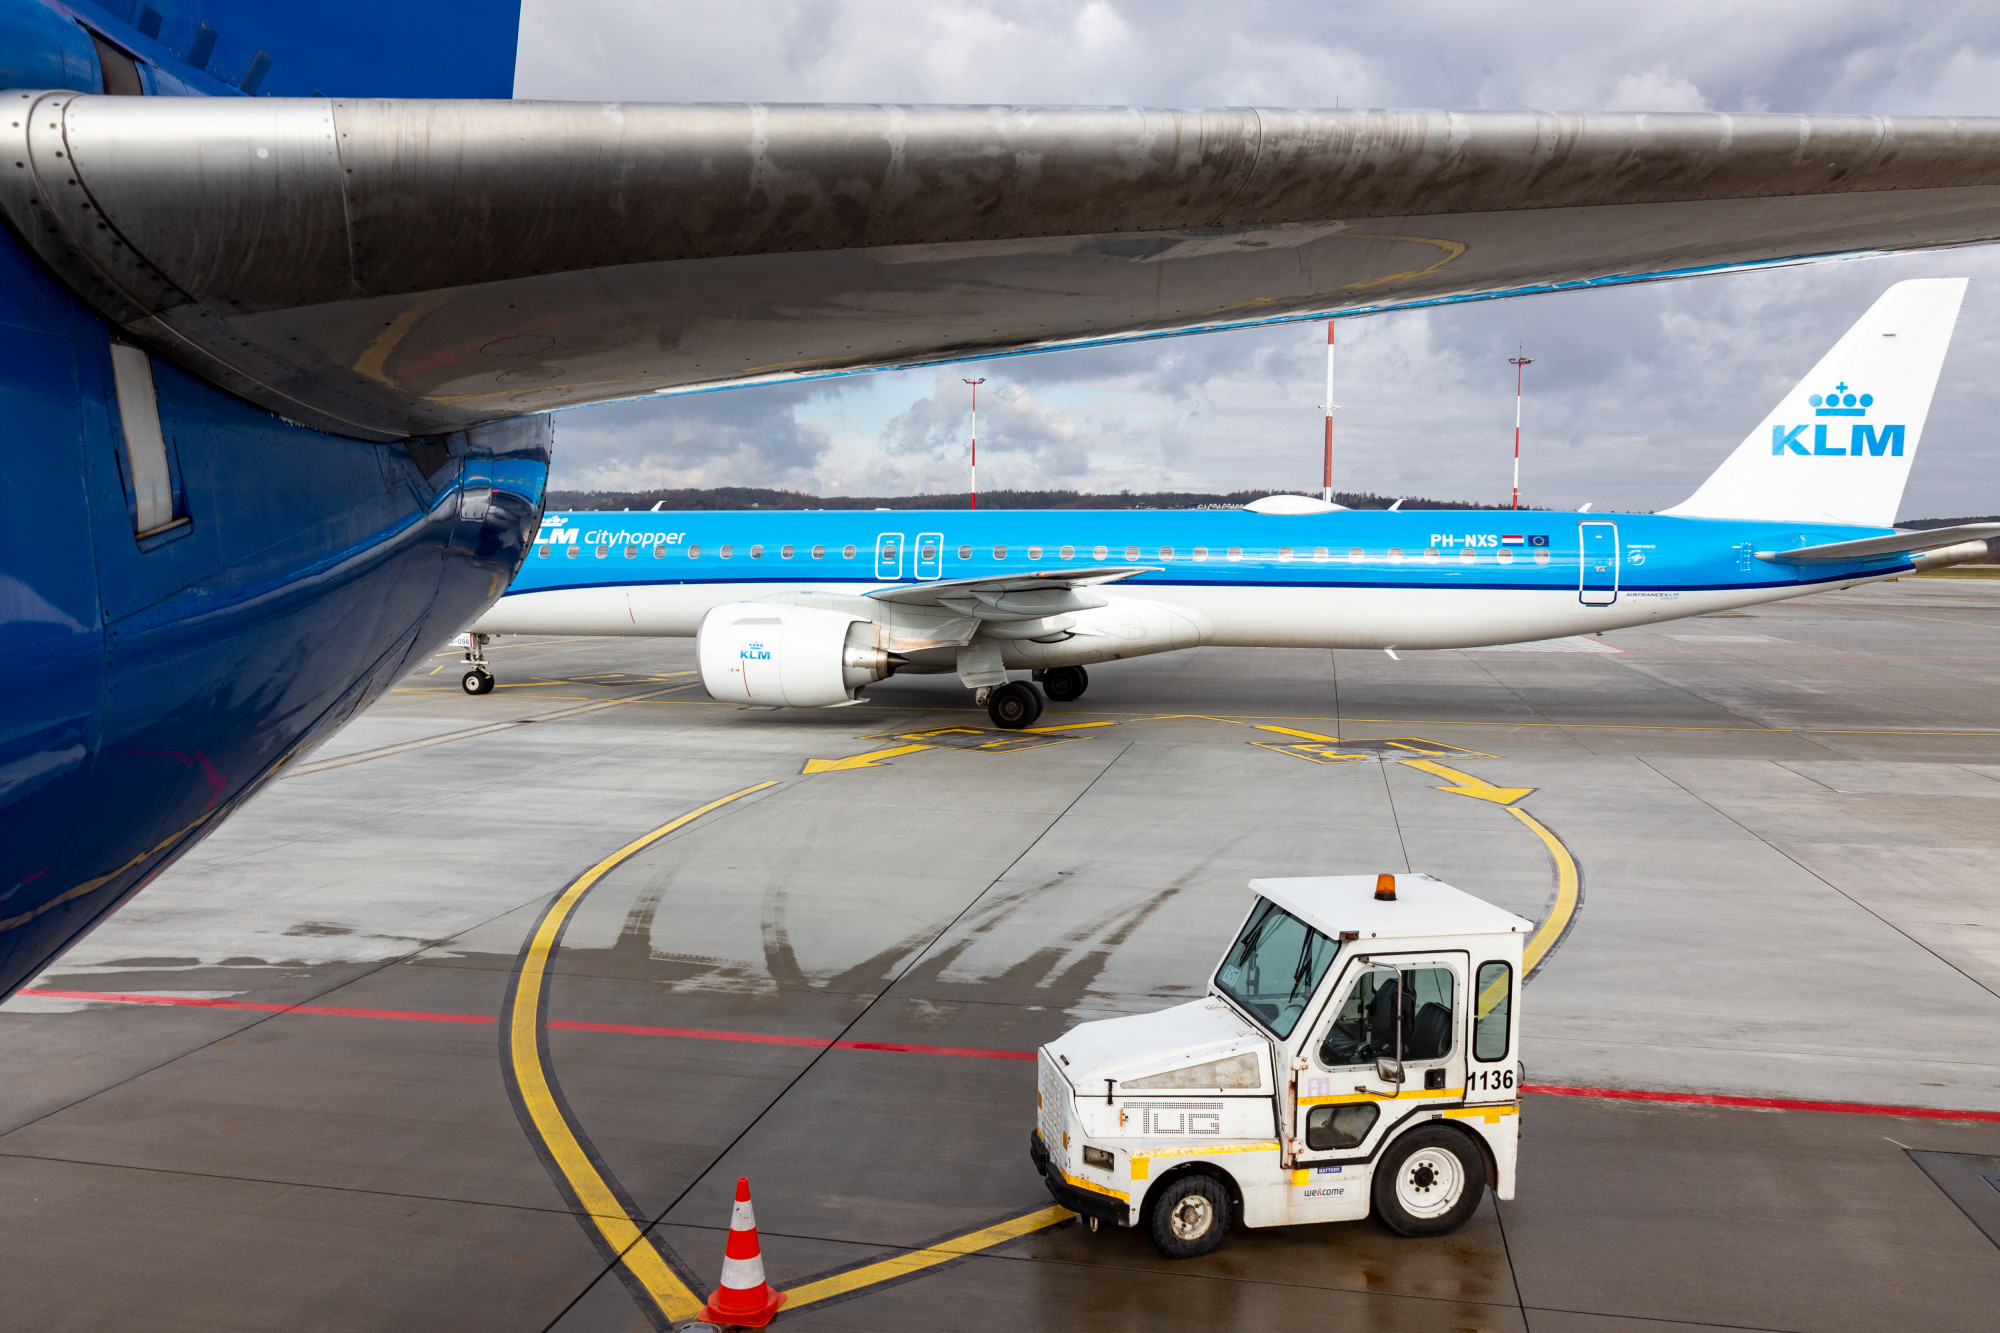 Meghalt egy ember az amszterdami repülőtéren, miután a gép járó hajtóművébe került